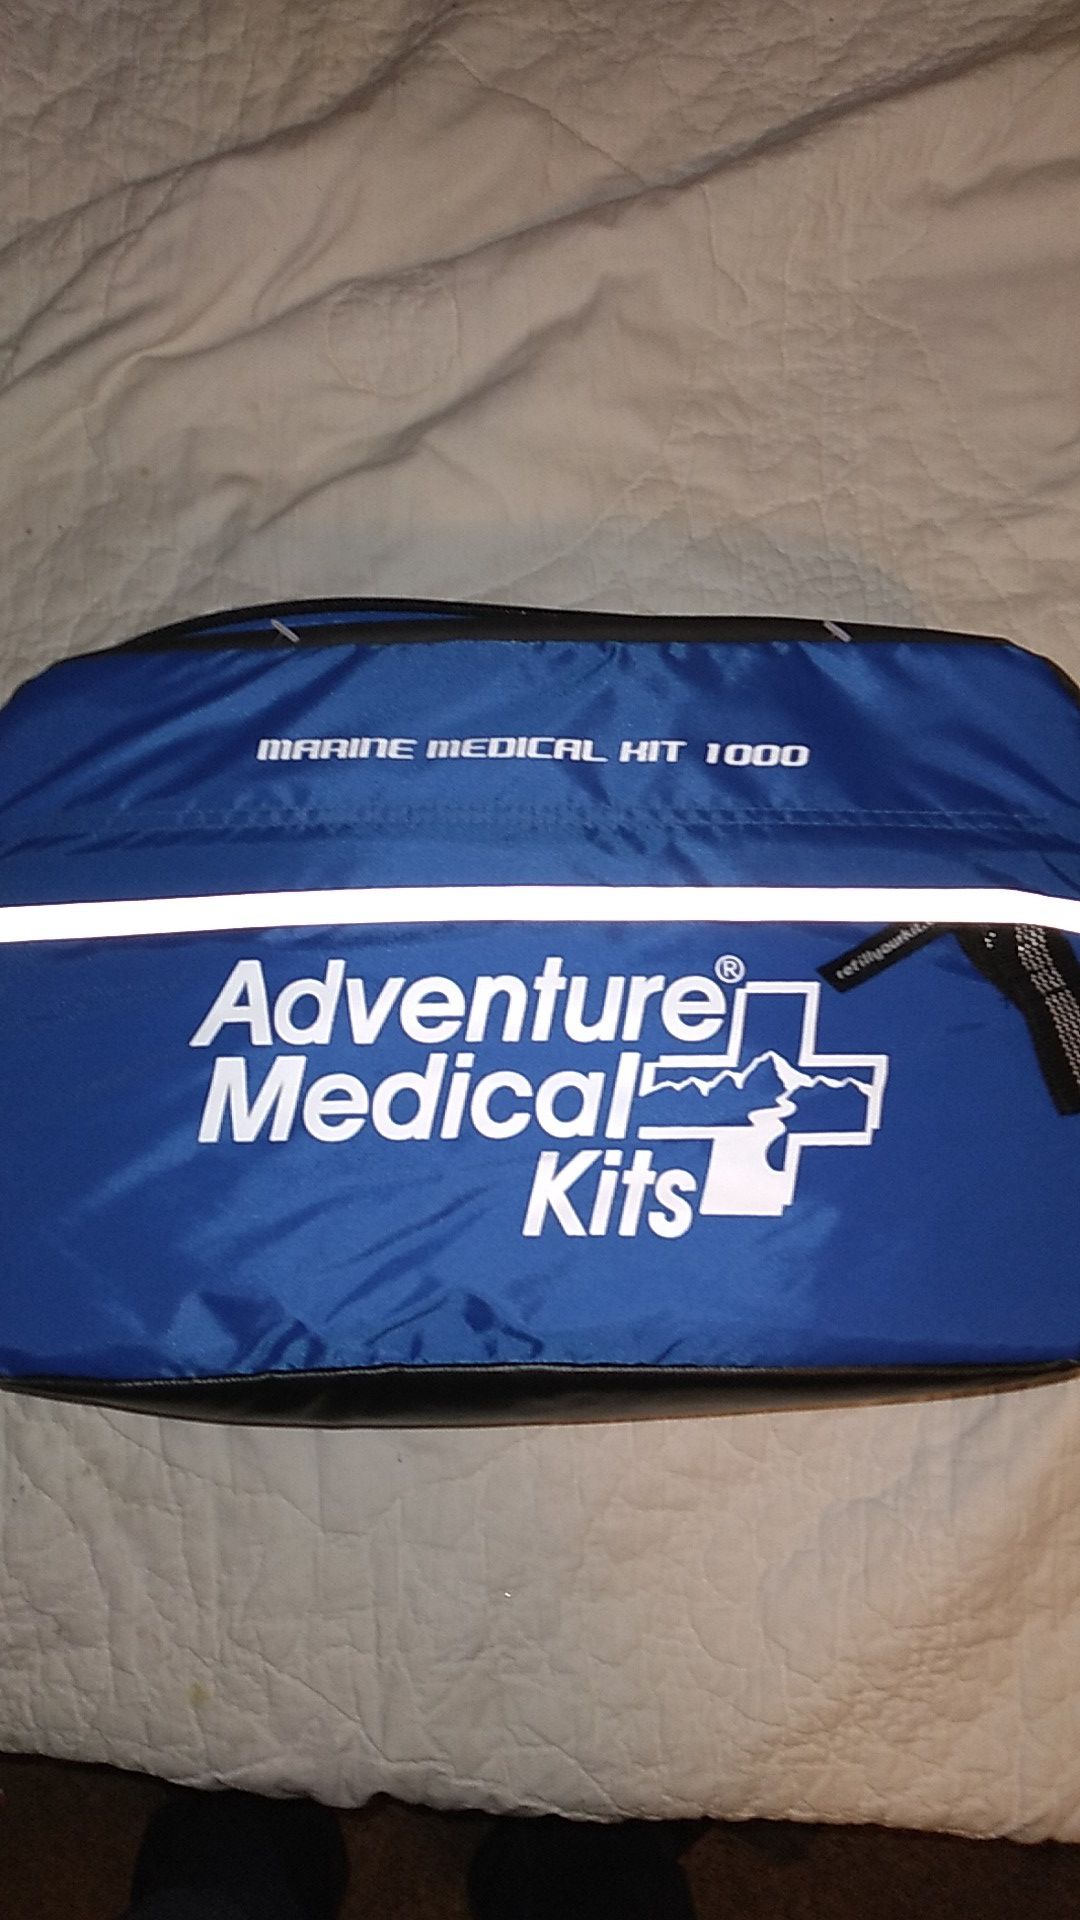 Adventure Marine Medical Kit 1000